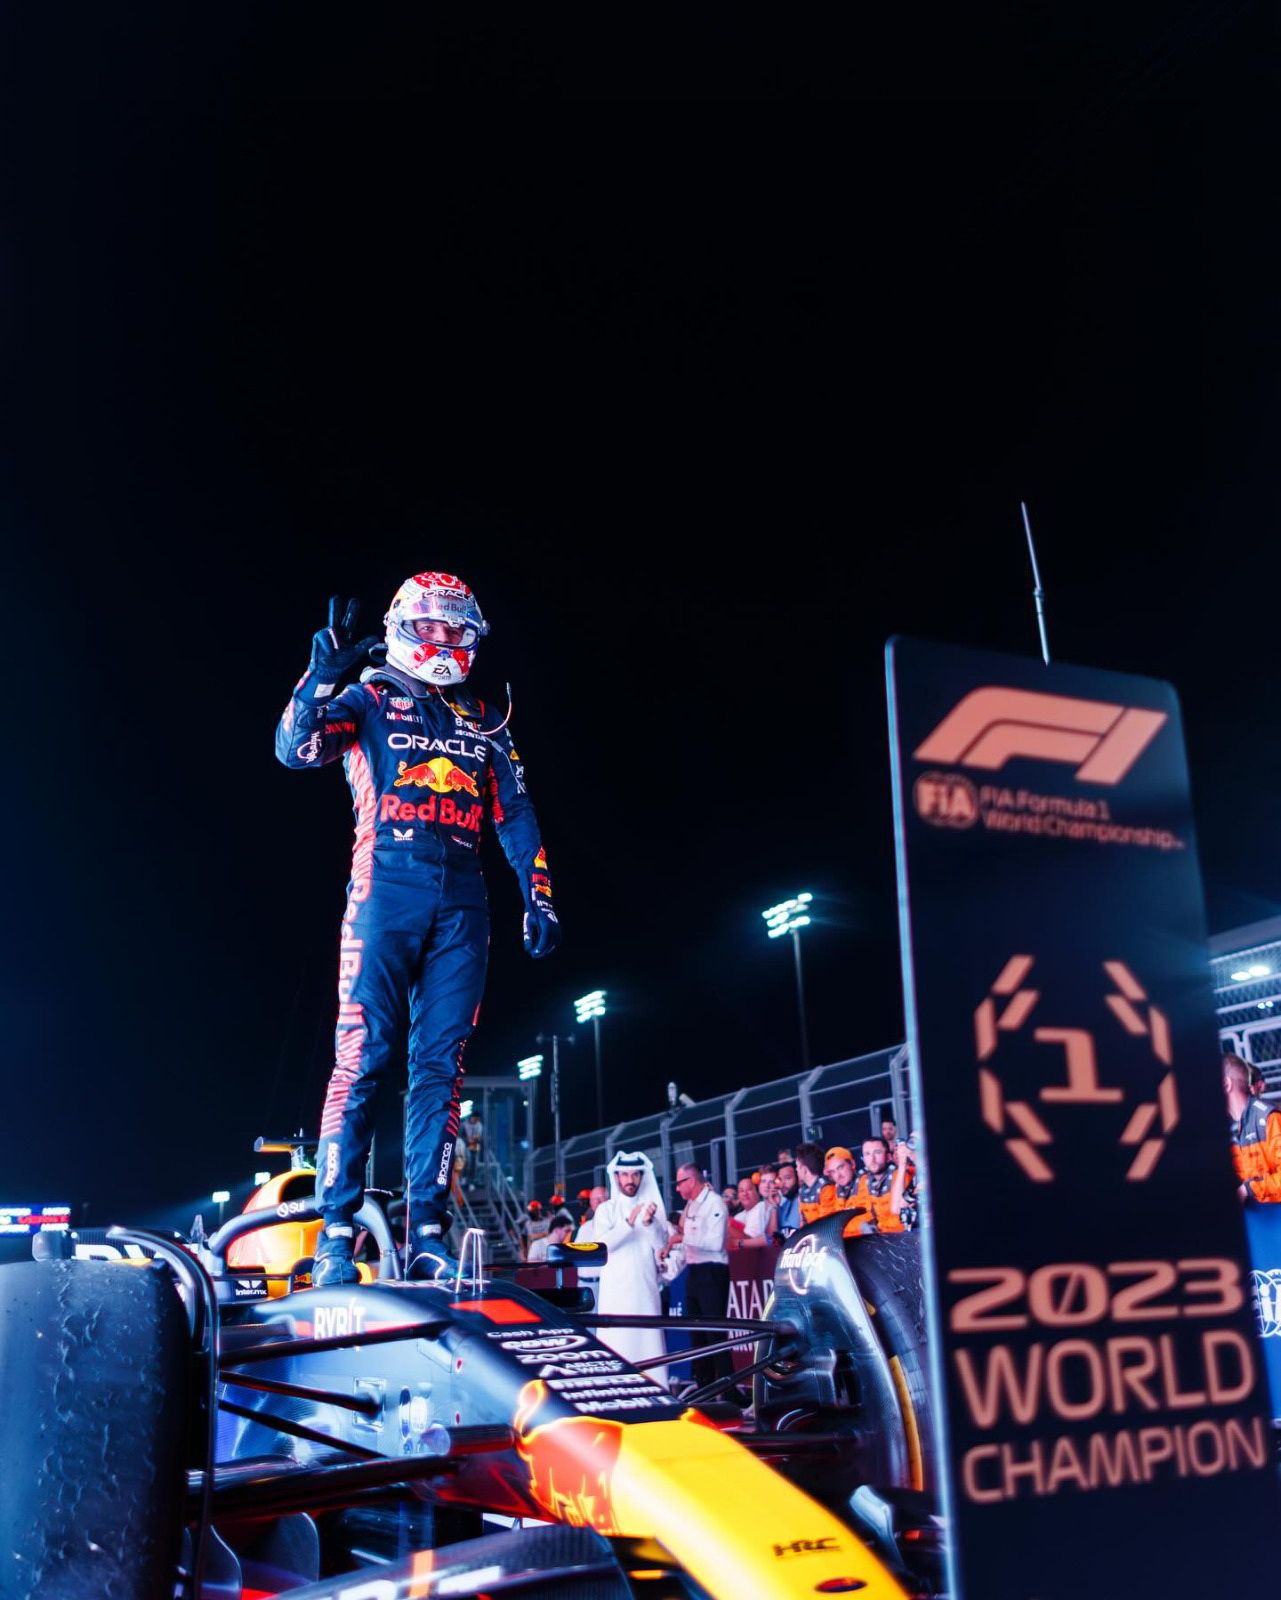 Verstappen meraih gelar juara dunia F1 pertamanya bersama tim Red Bull Racing Honda di akhir musim 2021. Ia kemudian berhasil mempertahankan gelar juara dunia F1 nya di tahun 2022 dan juga tahun 2023.*/  